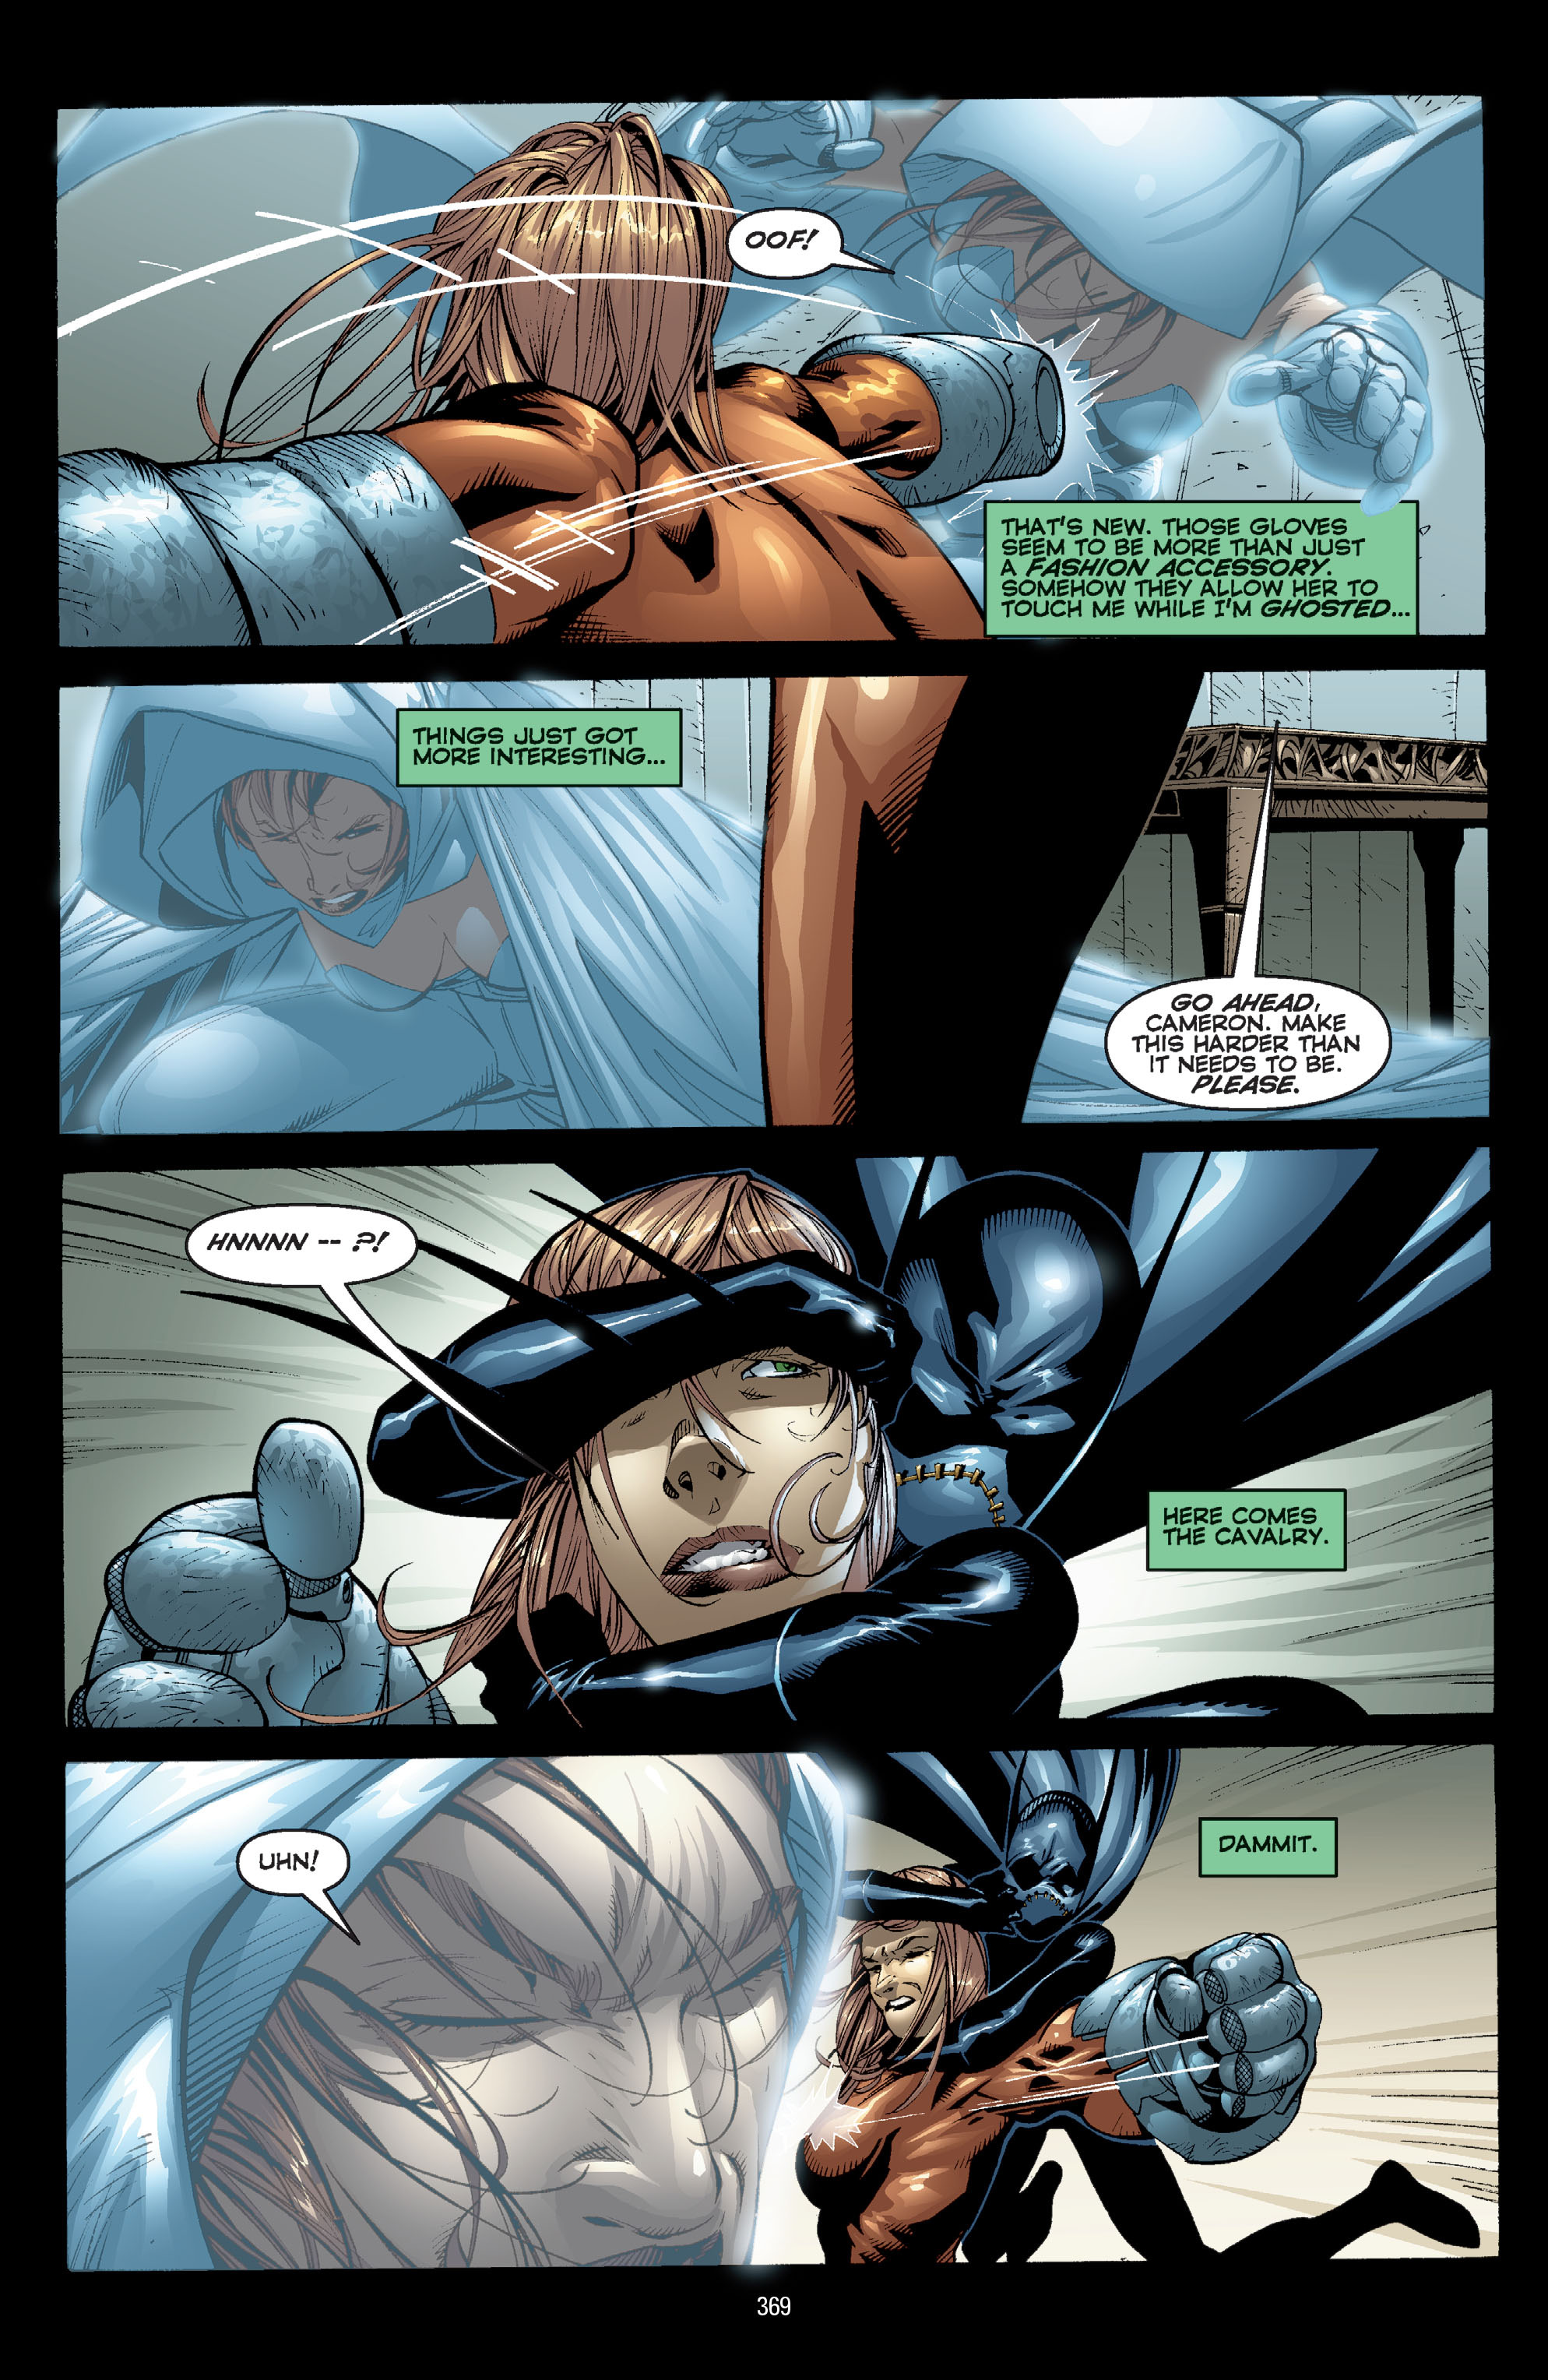 DC Comics/Dark Horse Comics: Justice League Full #1 - English 359